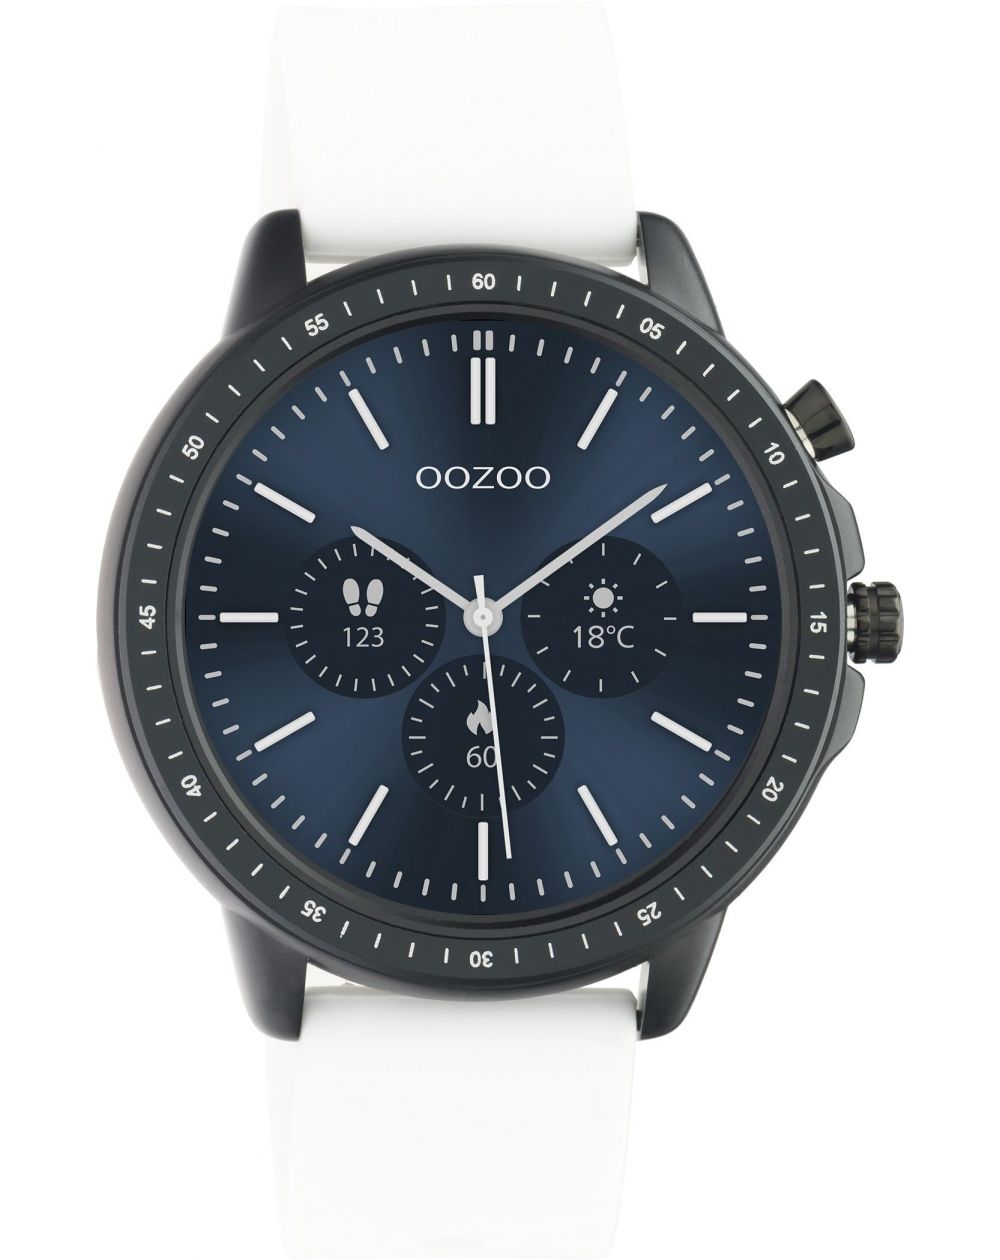 Montre Oozoo Q00327 - Smartwatch - Marque OOZOO - Livraison gratuite